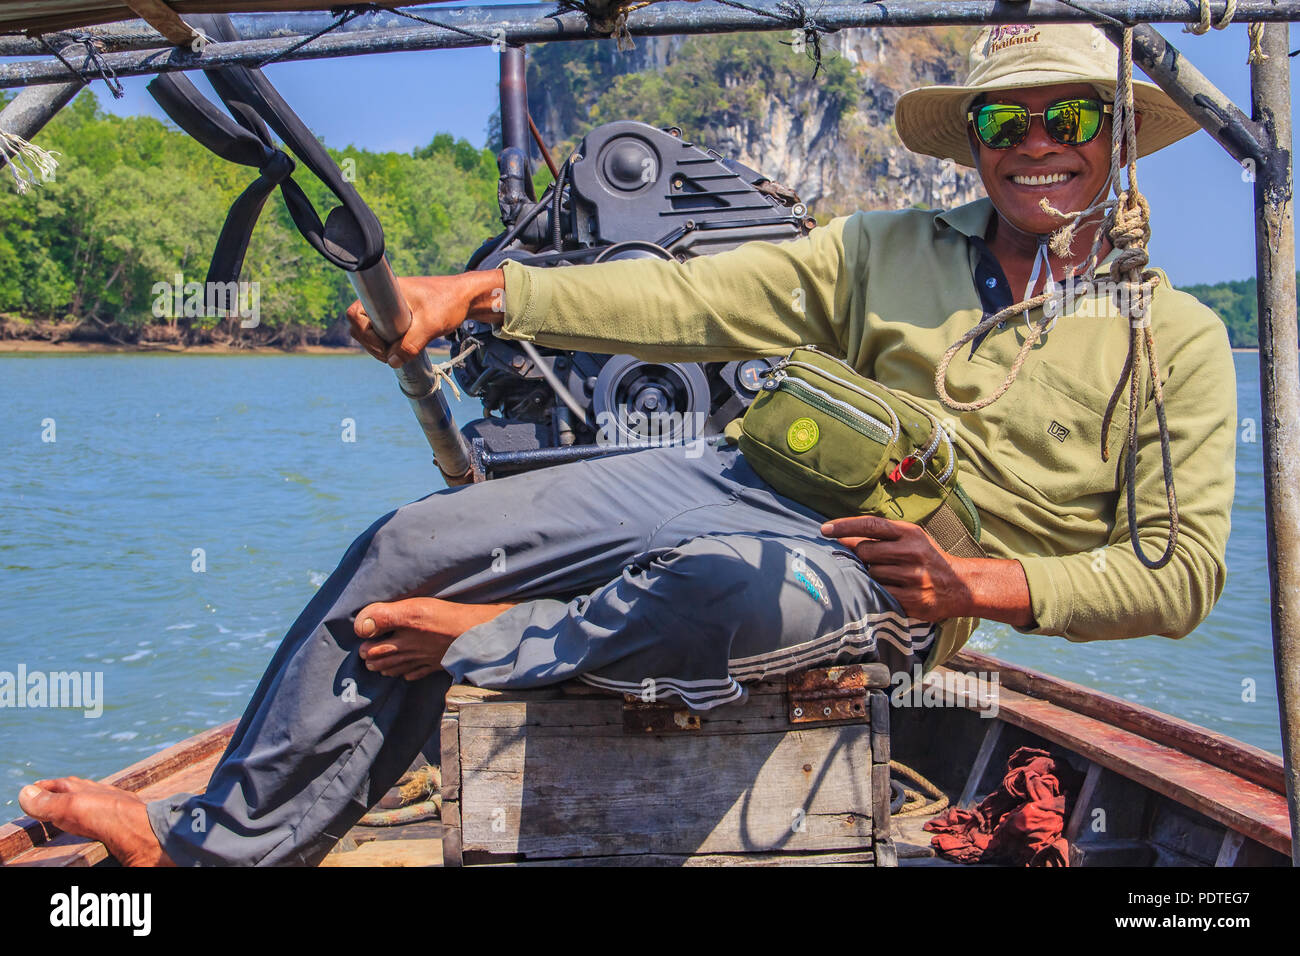 https://c8.alamy.com/comp/PDTEG7/smiling-longtail-boat-captain-in-thailand-PDTEG7.jpg